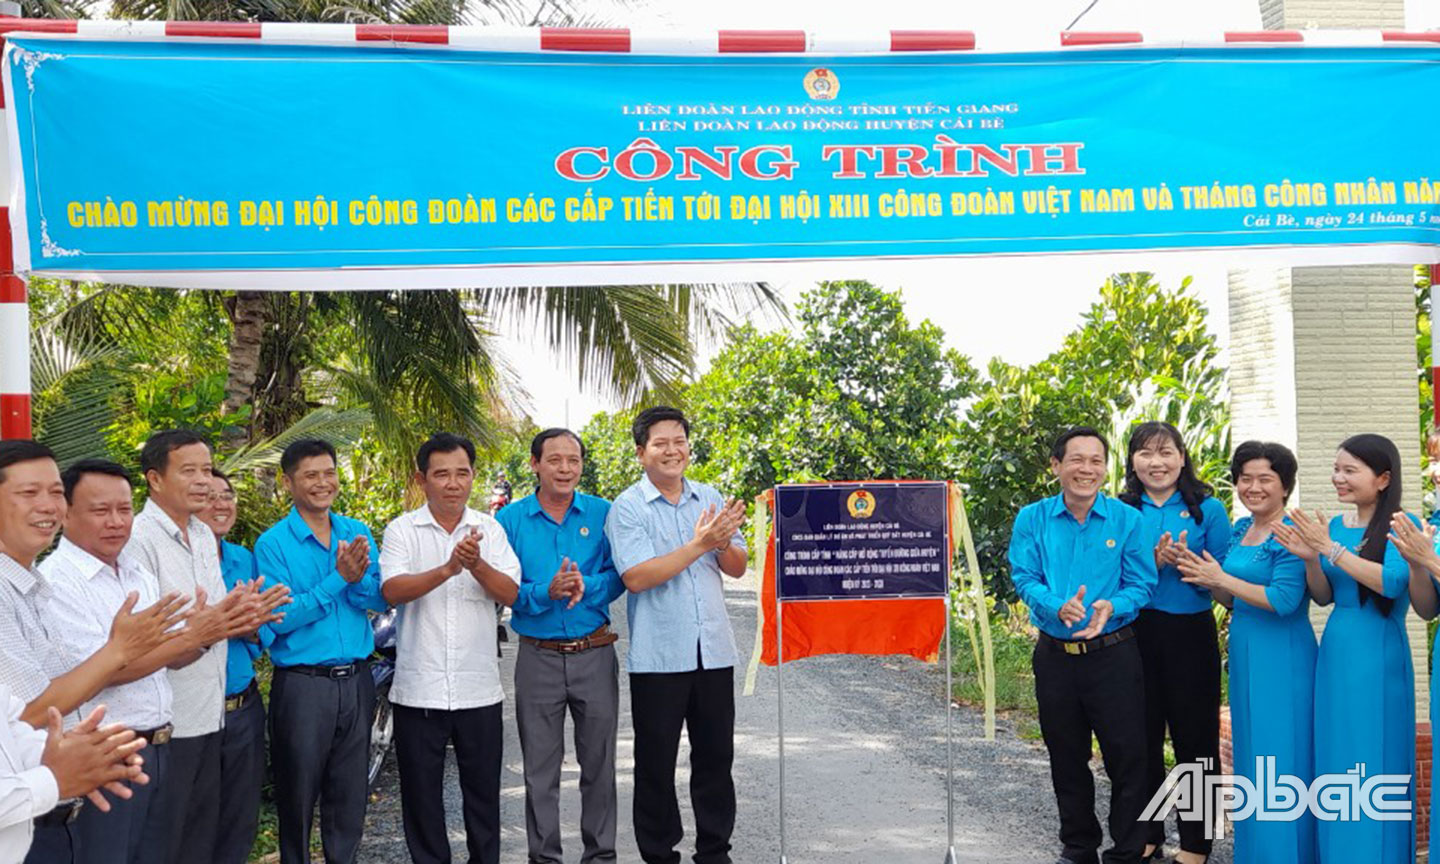 LĐLĐ huyện Cái Bè gắn biển công trình chào mừng Đại hội CĐ các cấp tiến tới Đại hội XIII CĐ Việt Nam  và Tháng Công nhân 2023.